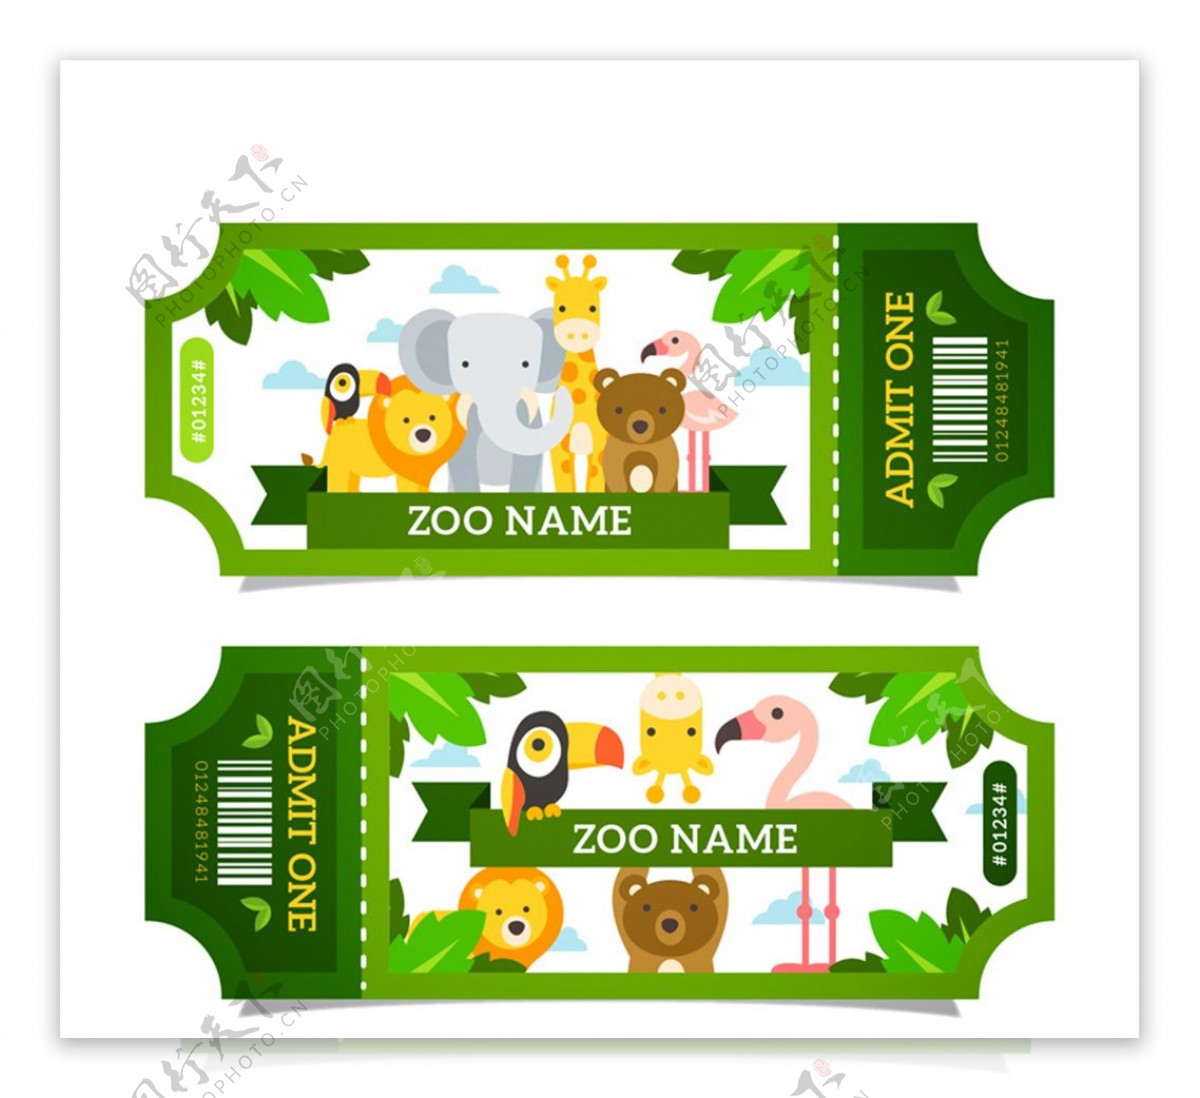 绿色动物园门票设计矢量素材